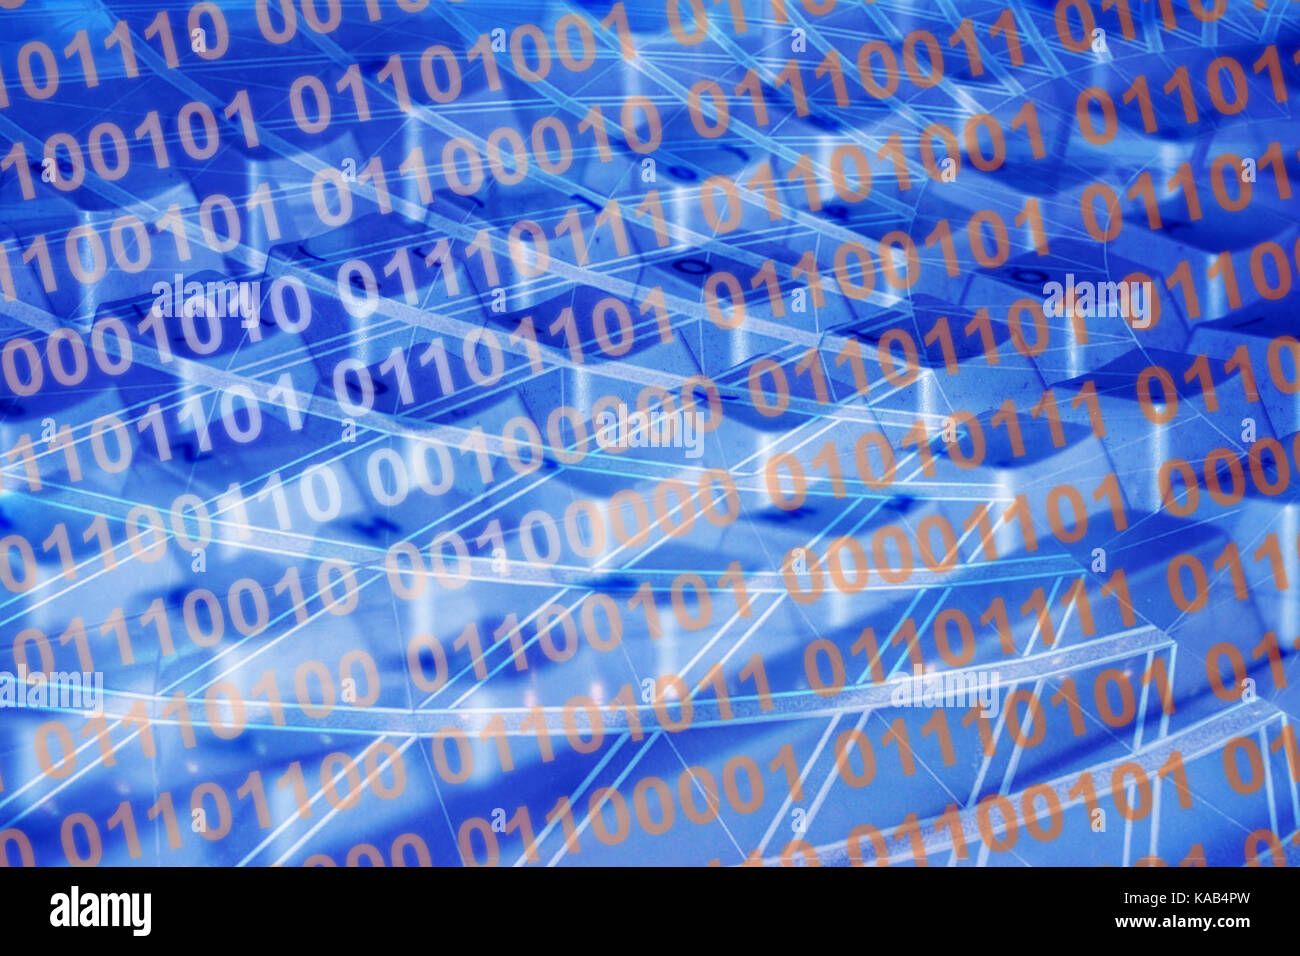 Código binario en fondo azul con teclado y líneas -- Hintergrund Binärcode en blau mit Linien und Tastatur Foto de stock